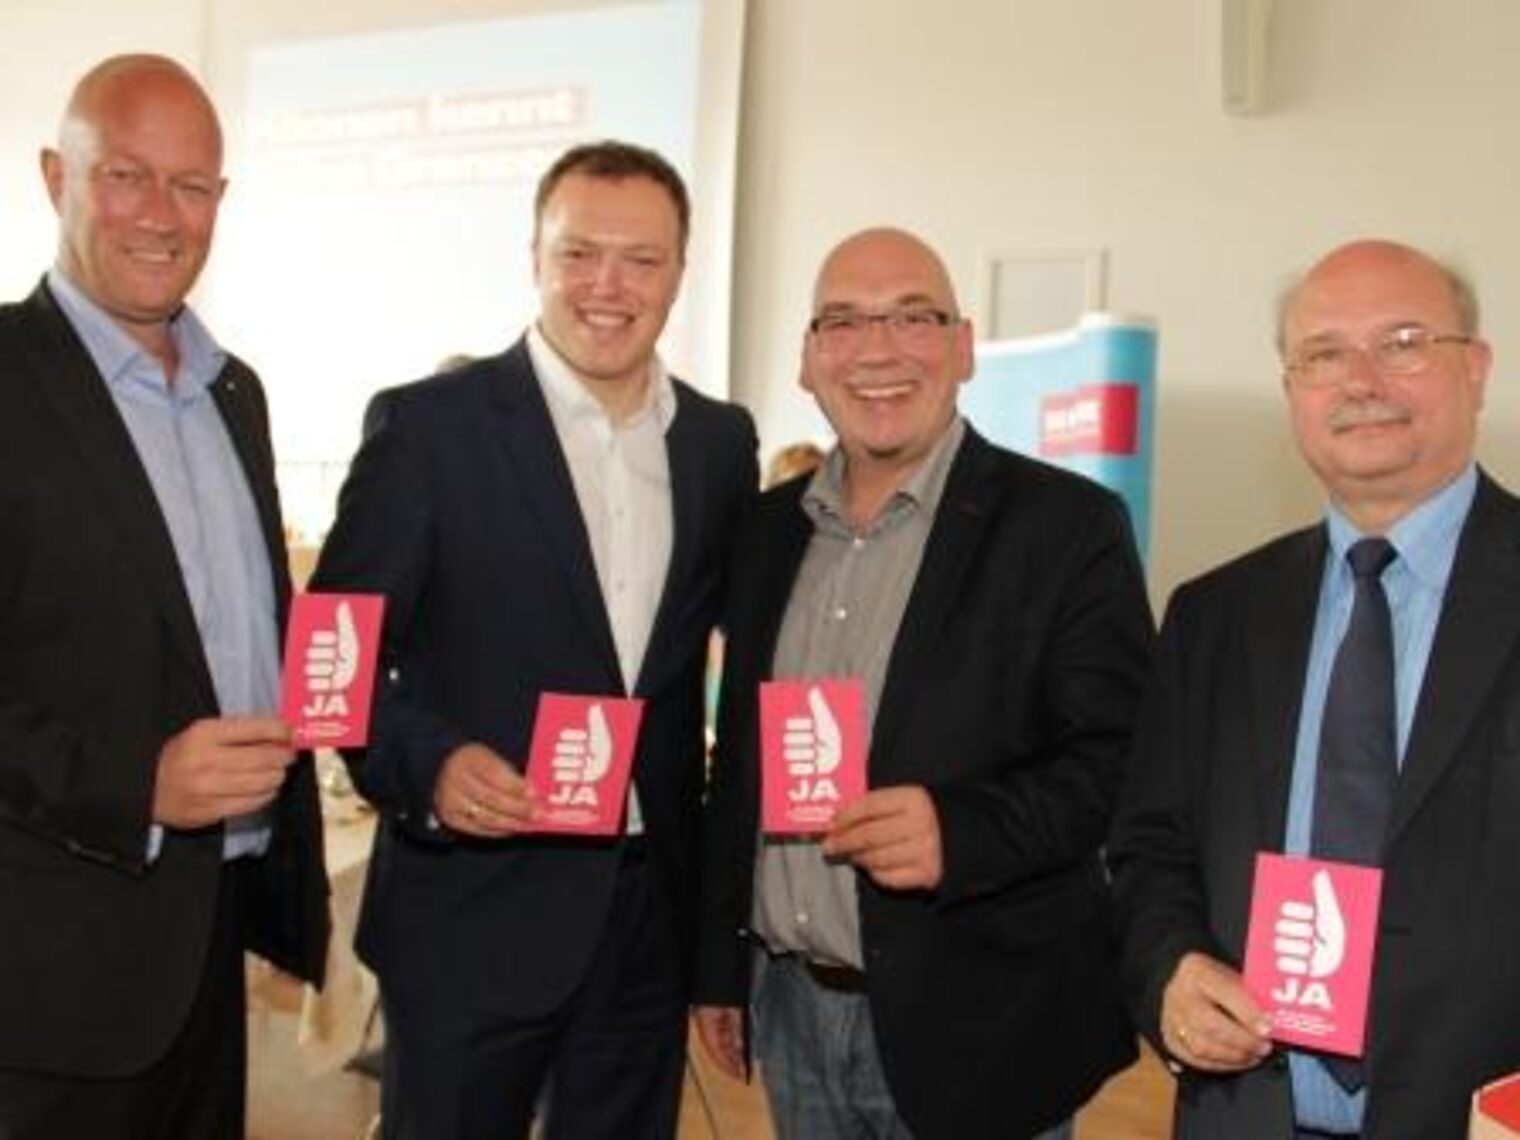 ... sagen "Ja zum Handwerk": Thomas Kemmerich, Frank Weber, Dr. Mario Voigt und Dieter Hausold.während des THT-Wahlforums im BBZ der Handwerkskammer Erfurt.